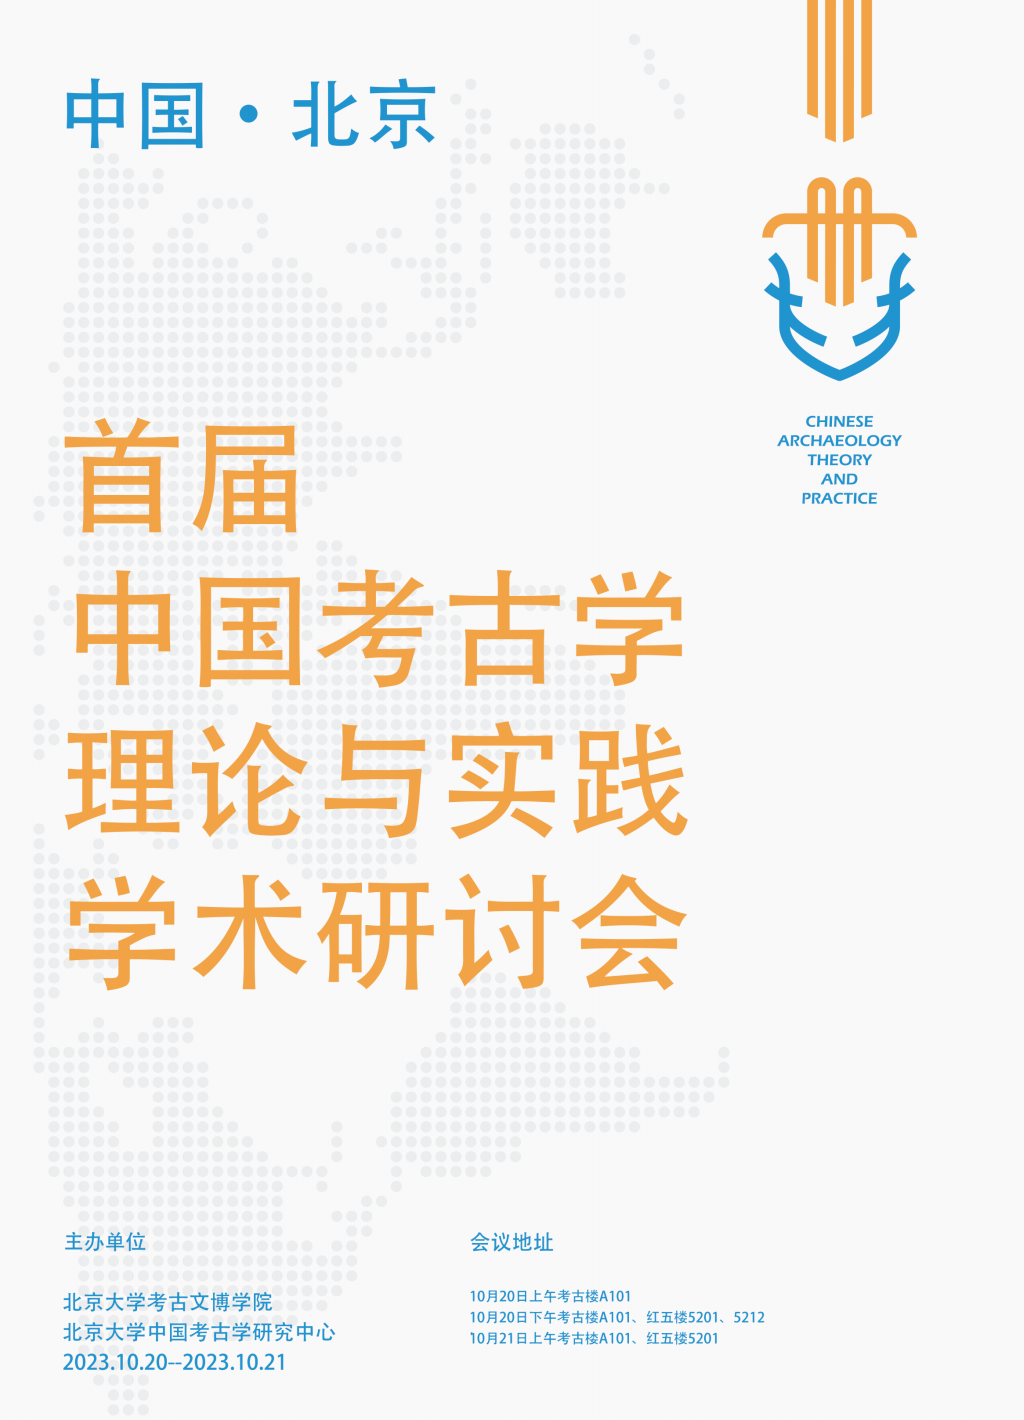 会议预告｜首届“中国考古学的理论与实践”学术研讨会-北京大学考古文博学院